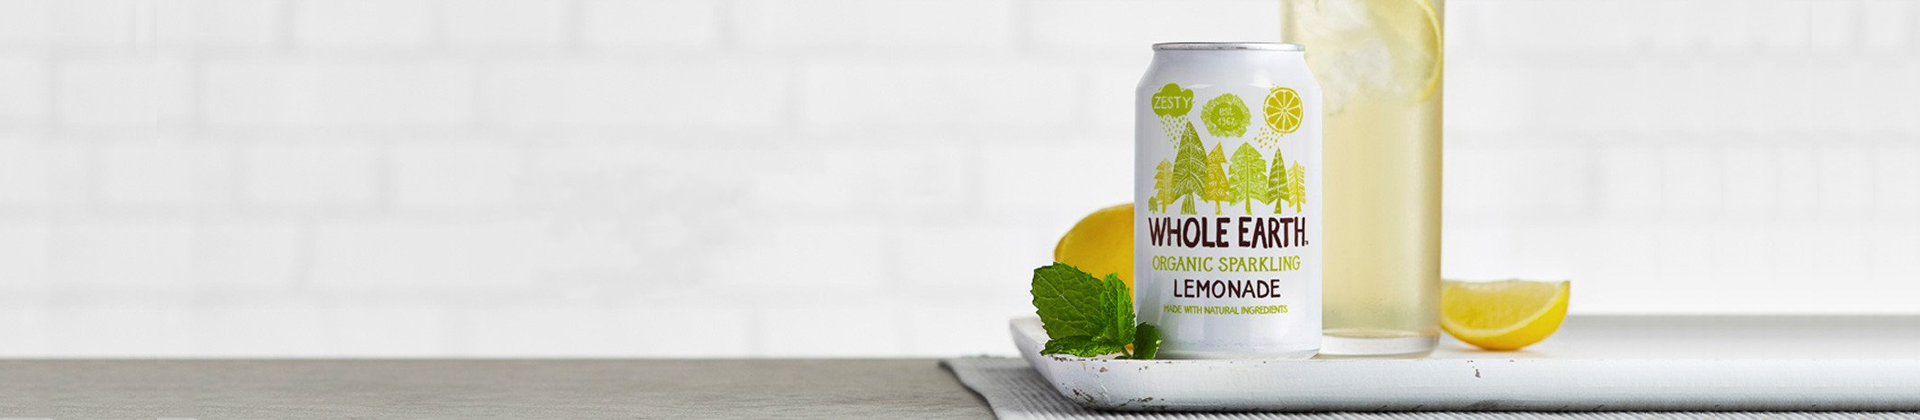 Whole Earth Organic Sparkling Lemonade.